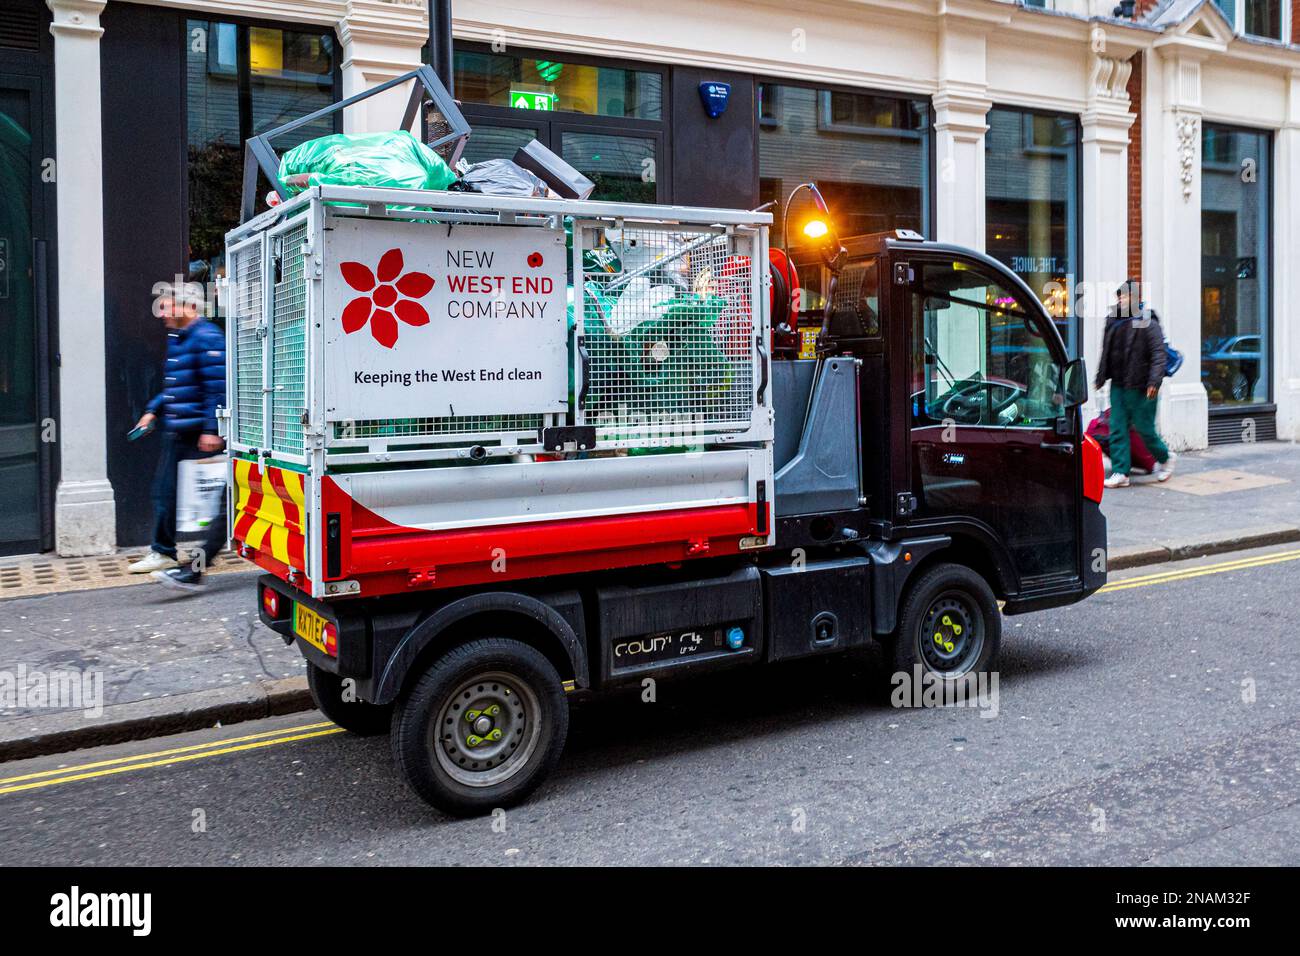 Veicolo elettrico per la raccolta dei rifiuti London - veicolo elettrico per la raccolta dei rifiuti gestito dalla New West End Company Foto Stock